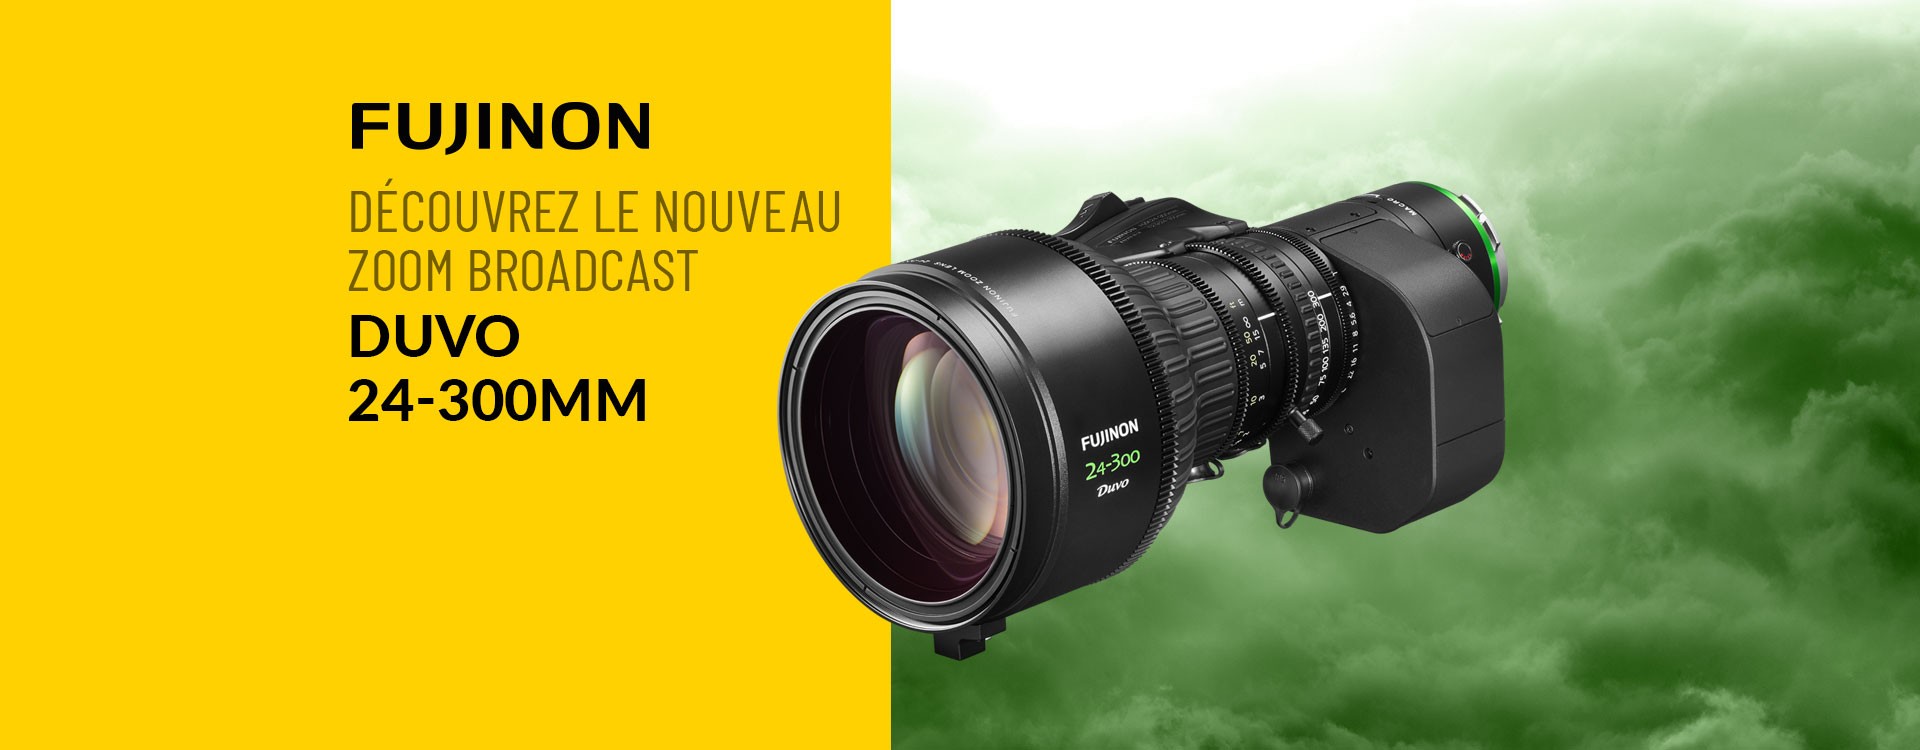 Fujifilm : Découvrez le nouveau zoom broadcast « FUJINON Duvo24-300mm »